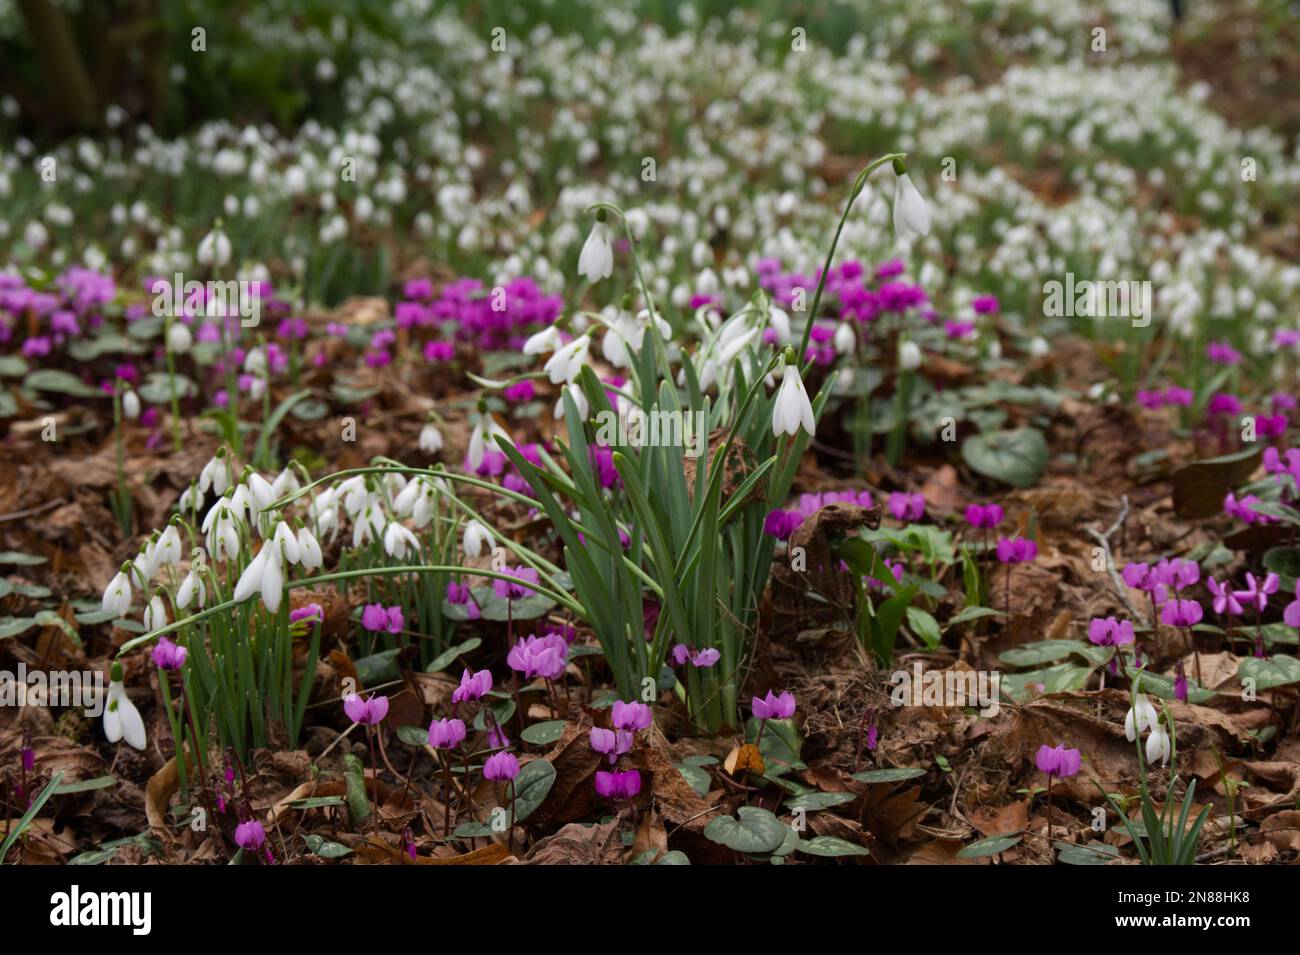 Esposizione invernale di gocce di neve naturalizzate, galanthus nivalis, e ciclamino magenta coum crescere attraverso lettiera foglia in un giardino del Regno Unito febbraio Foto Stock